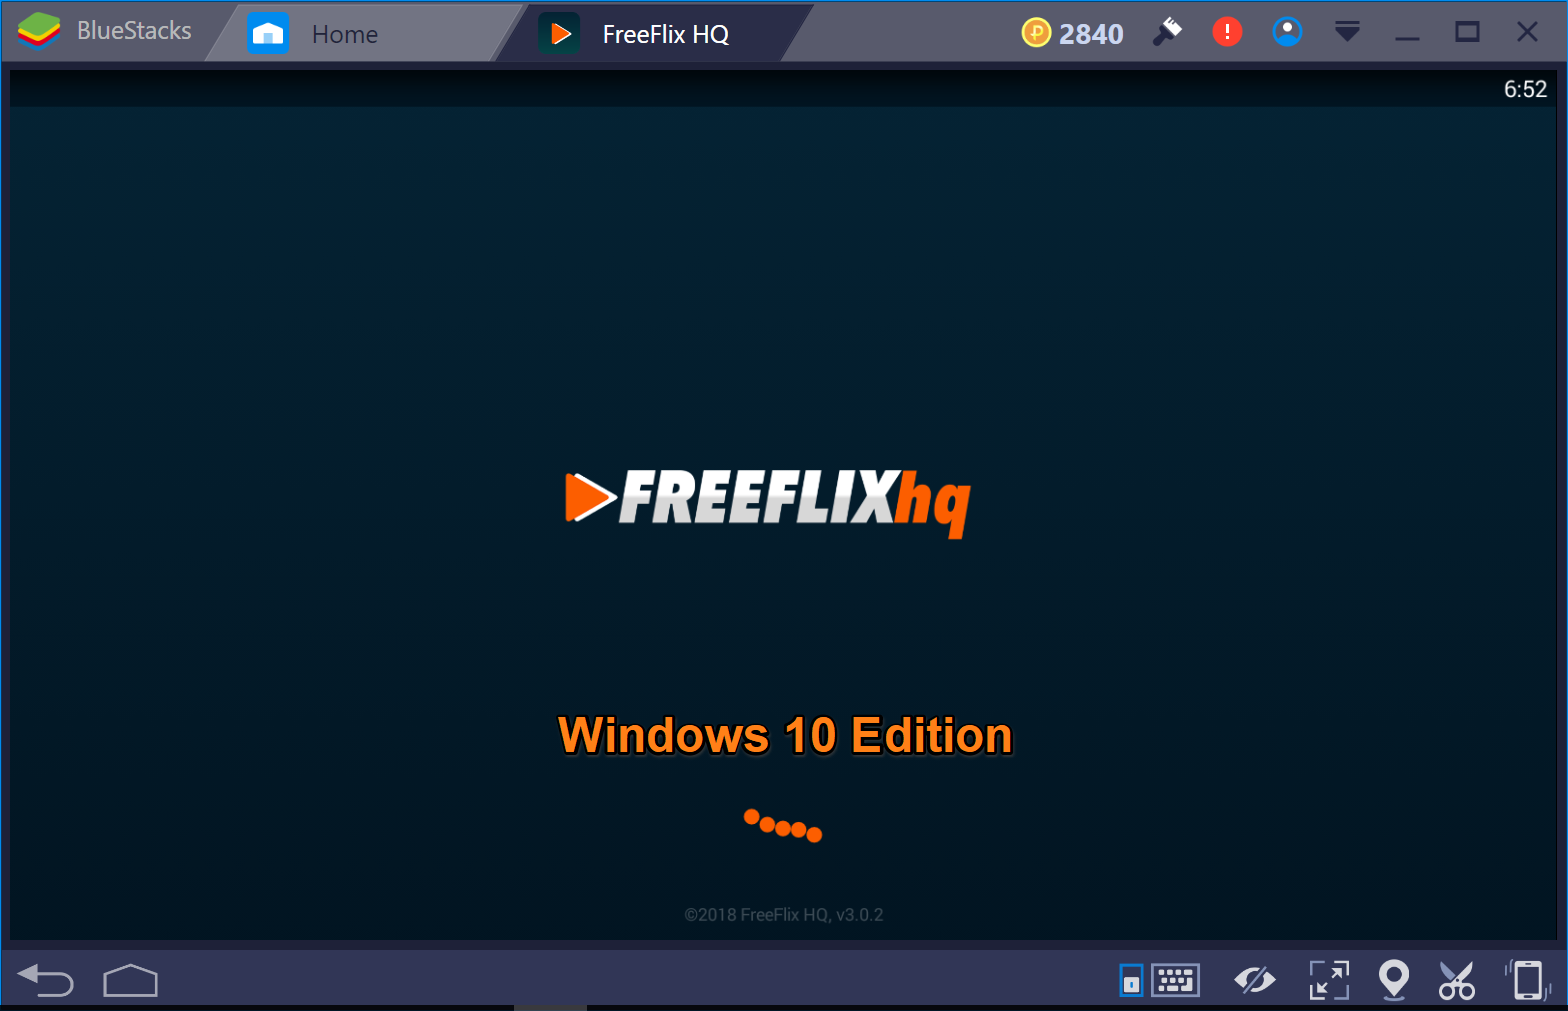 FreeFlix-HQ-PC-Windows-10